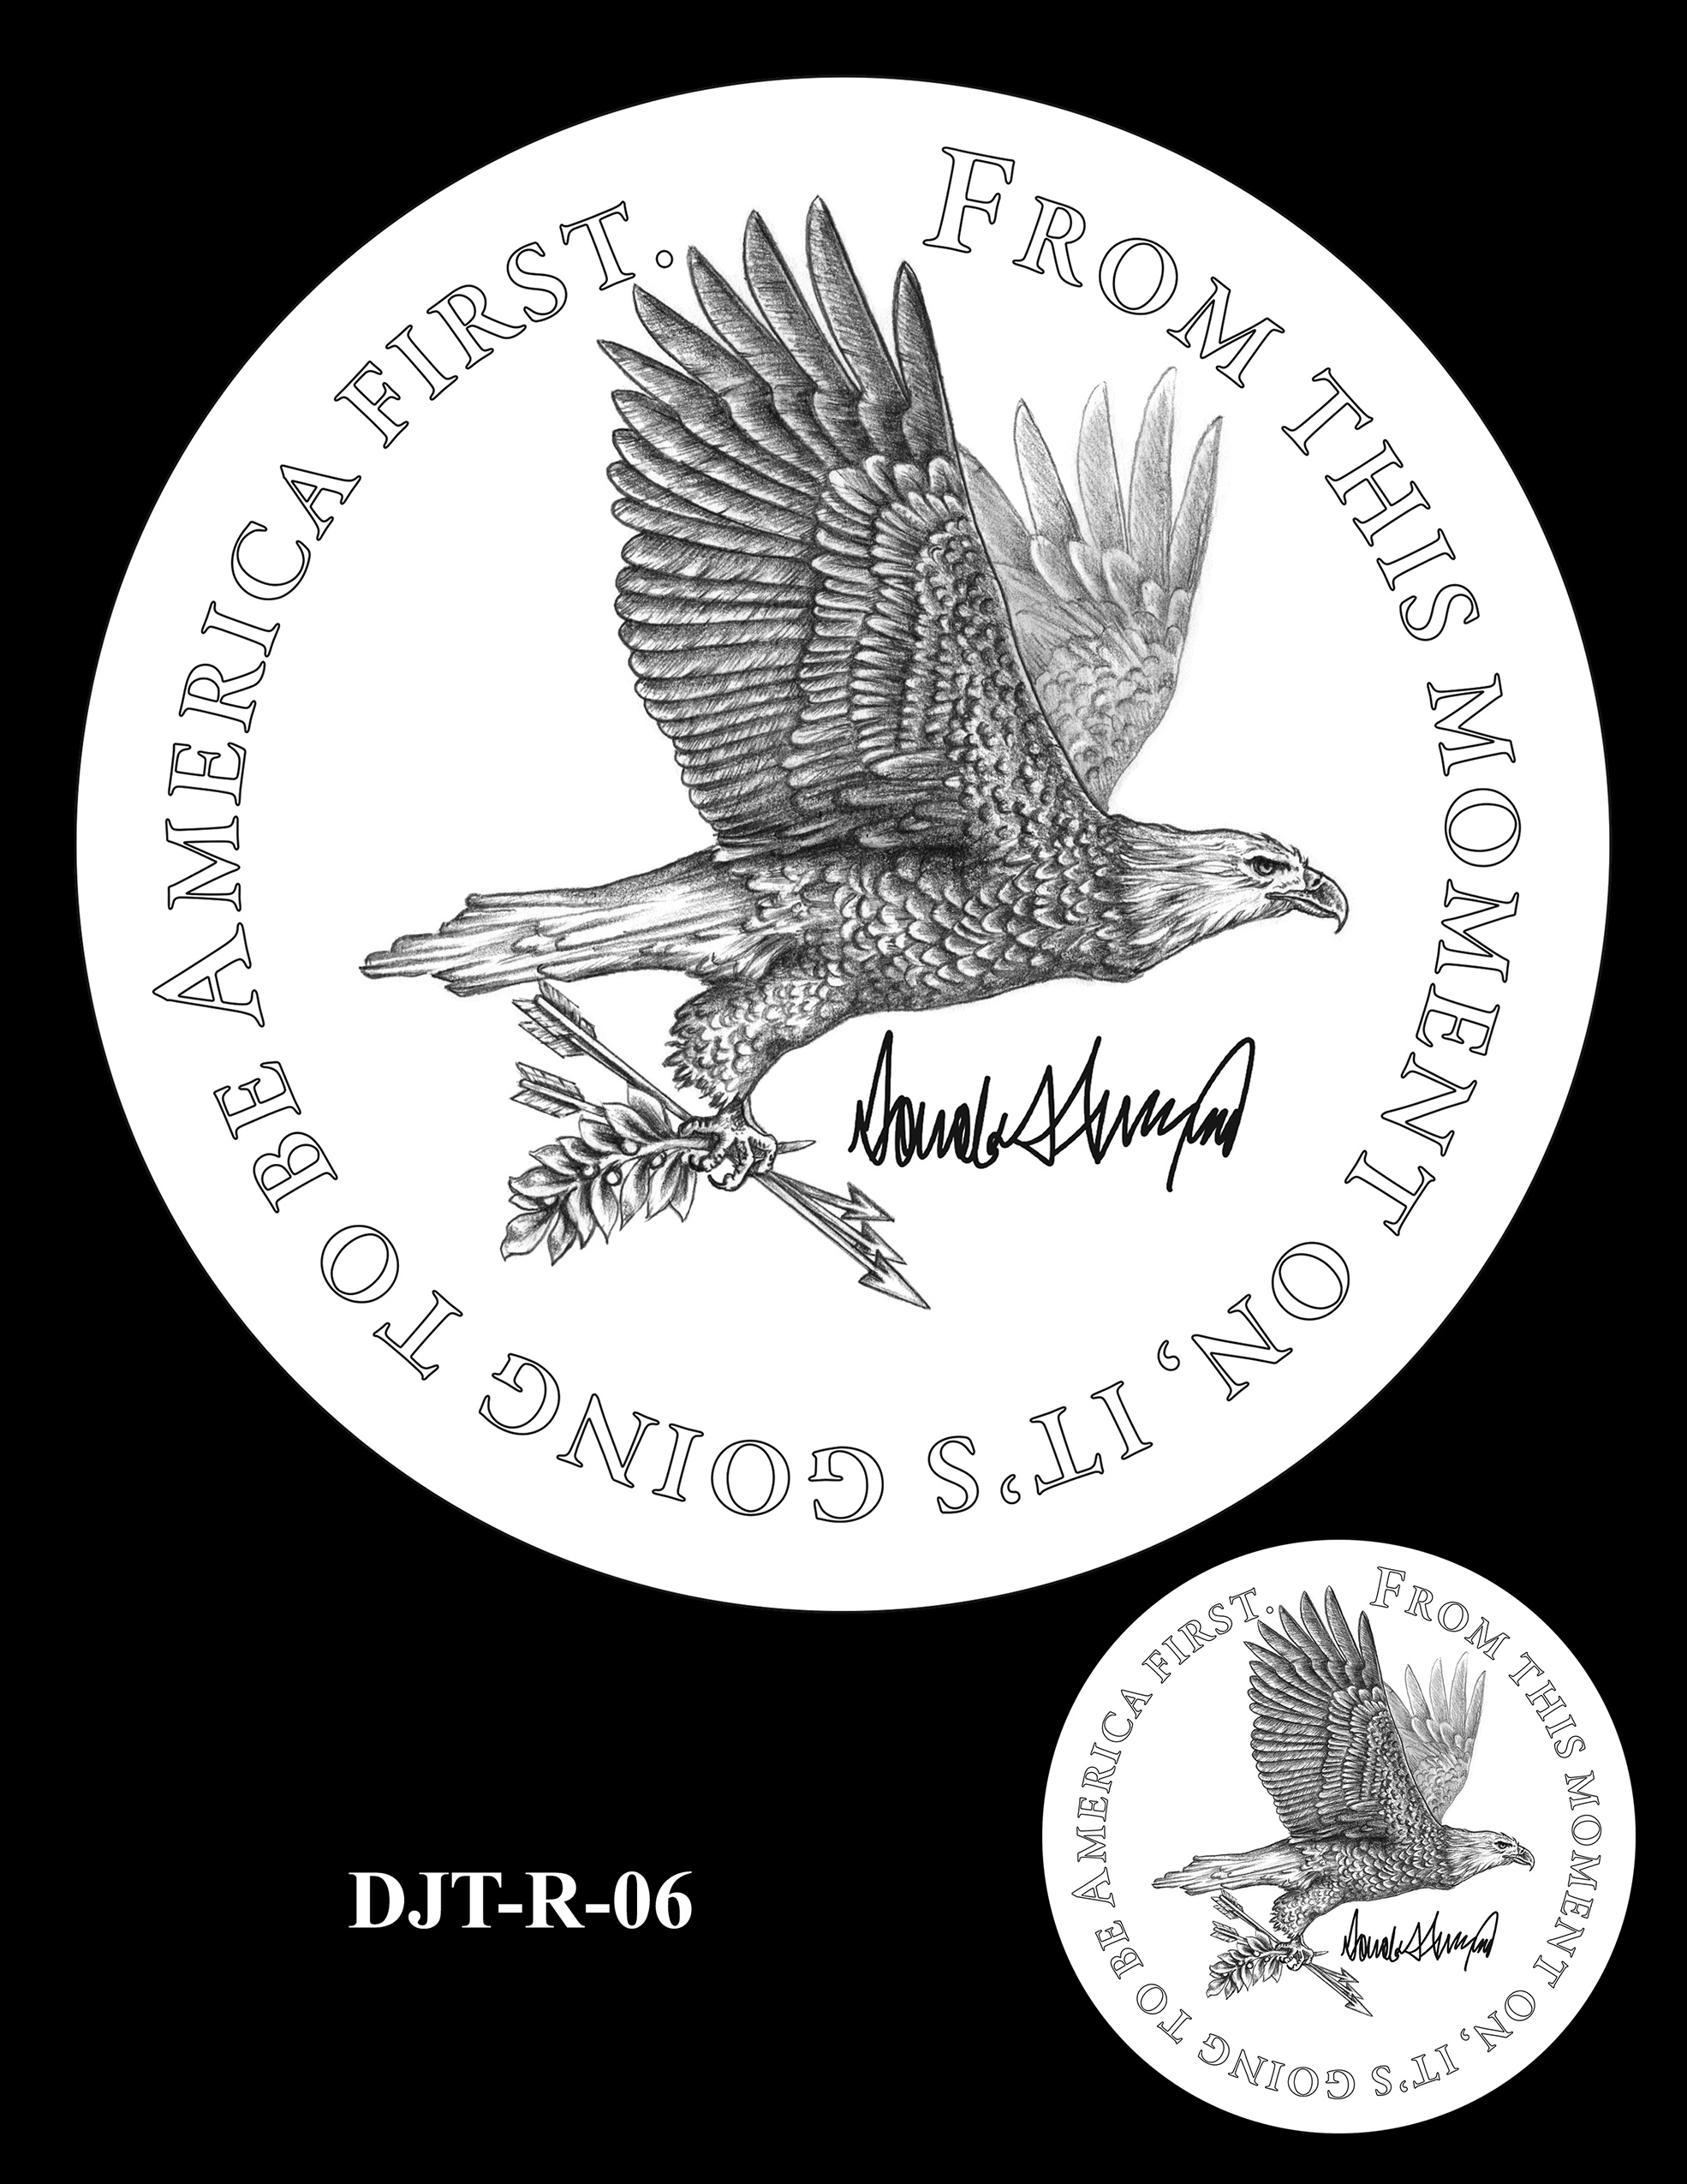 DJT-R-06 -- Donald J. Trump Presidential Medal